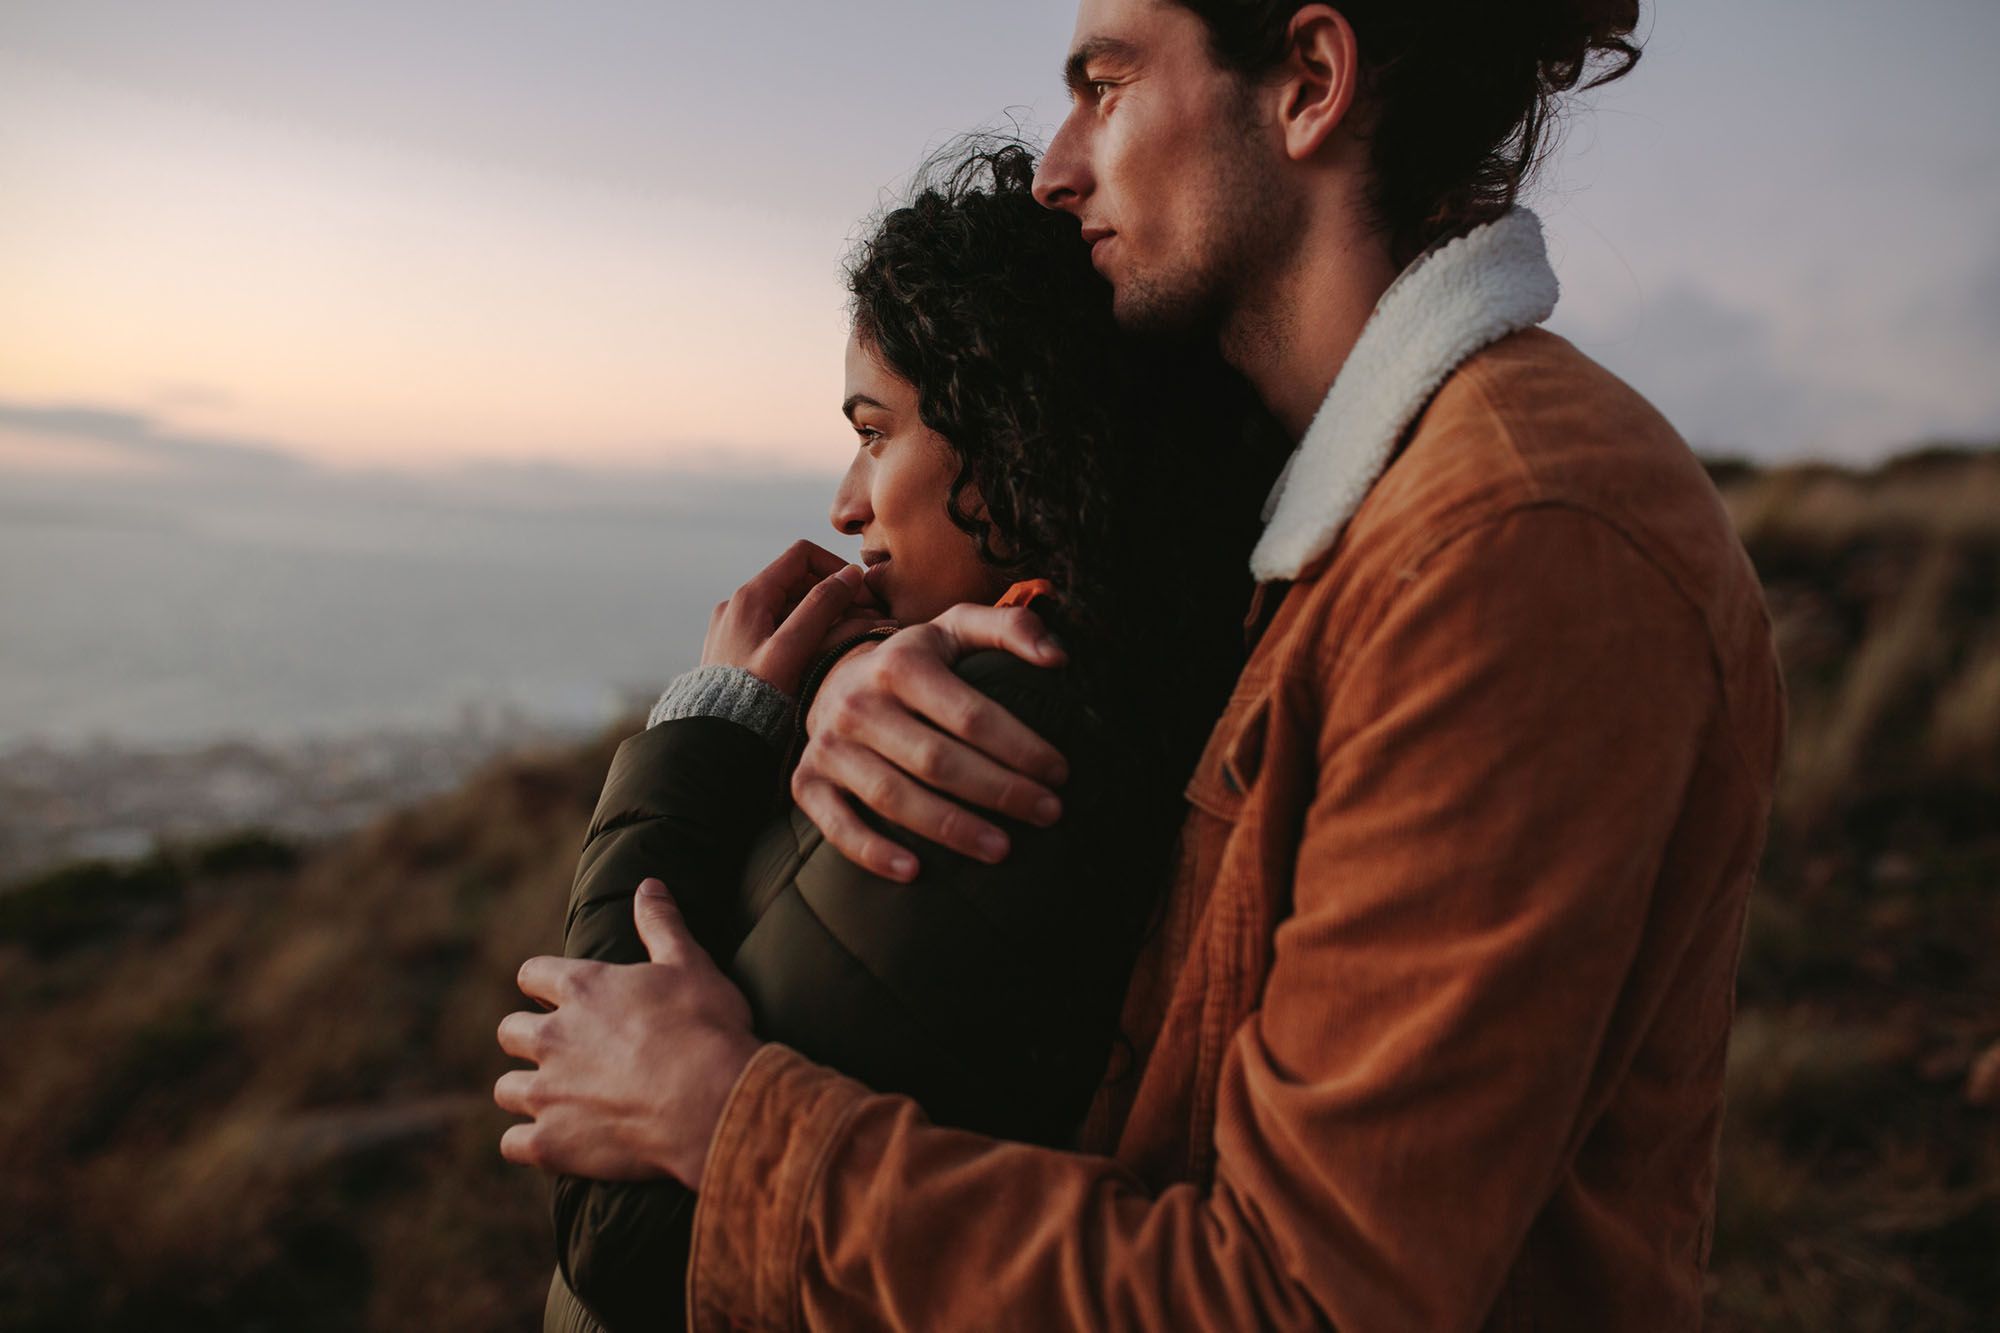 Mann in brauner Jacke umarmt Frau von hinten während beide den Sonnenuntergang betrachten